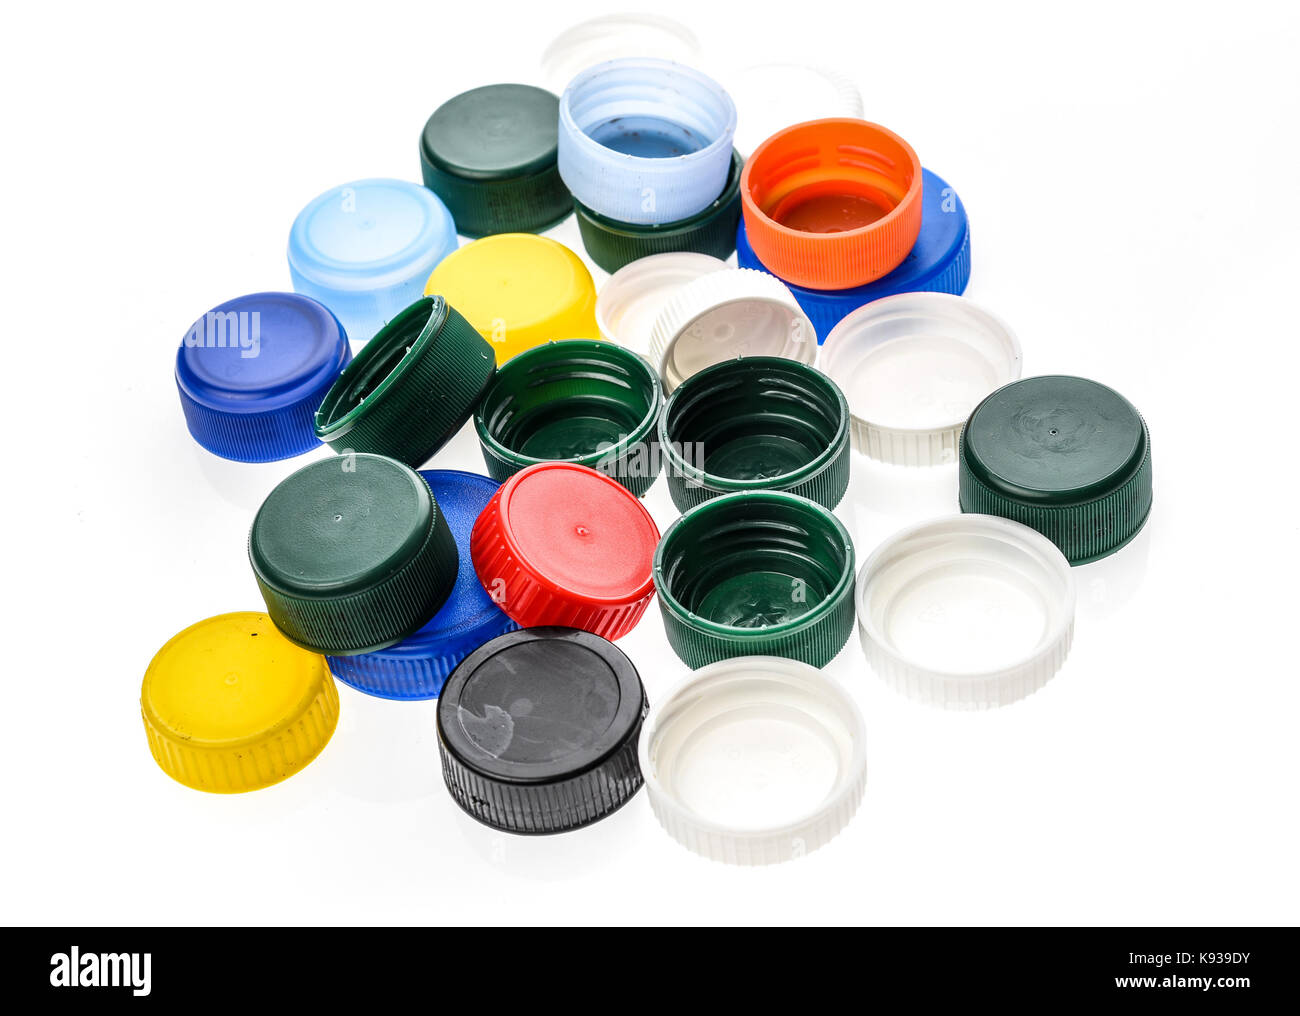 Verschlusskappen aus Kunststoff in verschiedenen Farben. Ein Haufen plastik  Flasche deckt. Auf weissem Hintergrund Stockfotografie - Alamy